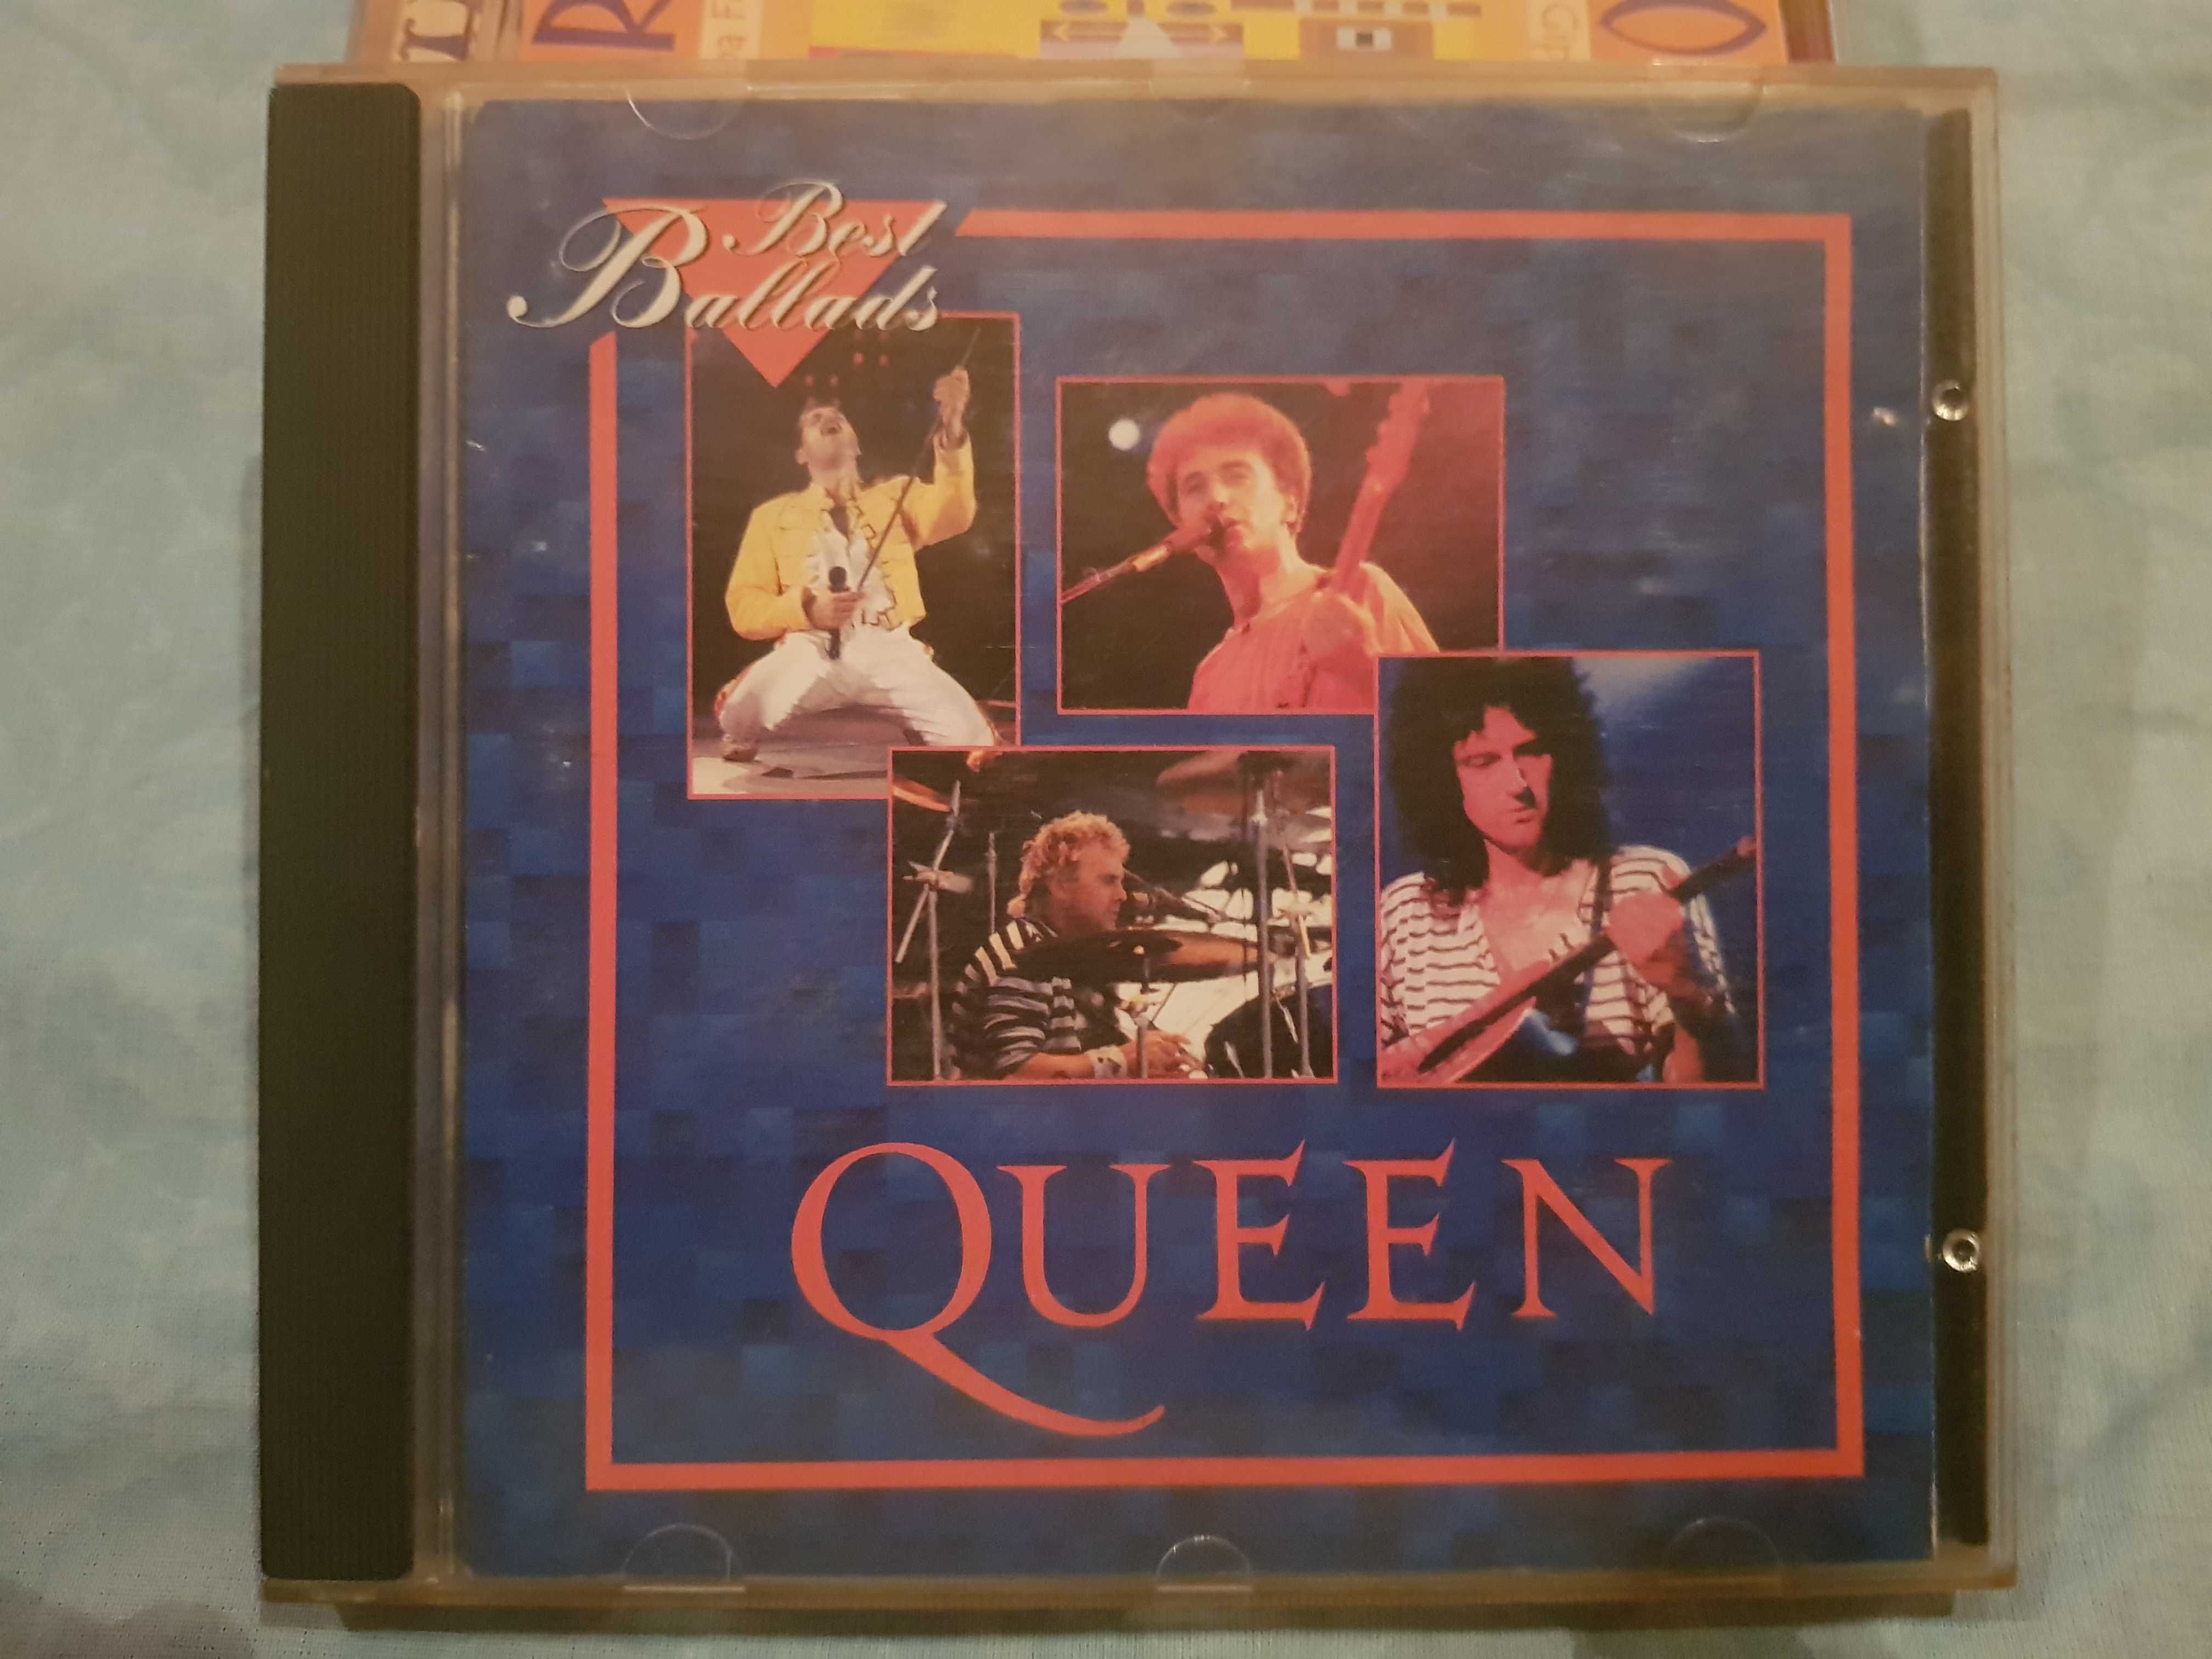 CD audio Queen Best ballads si altele